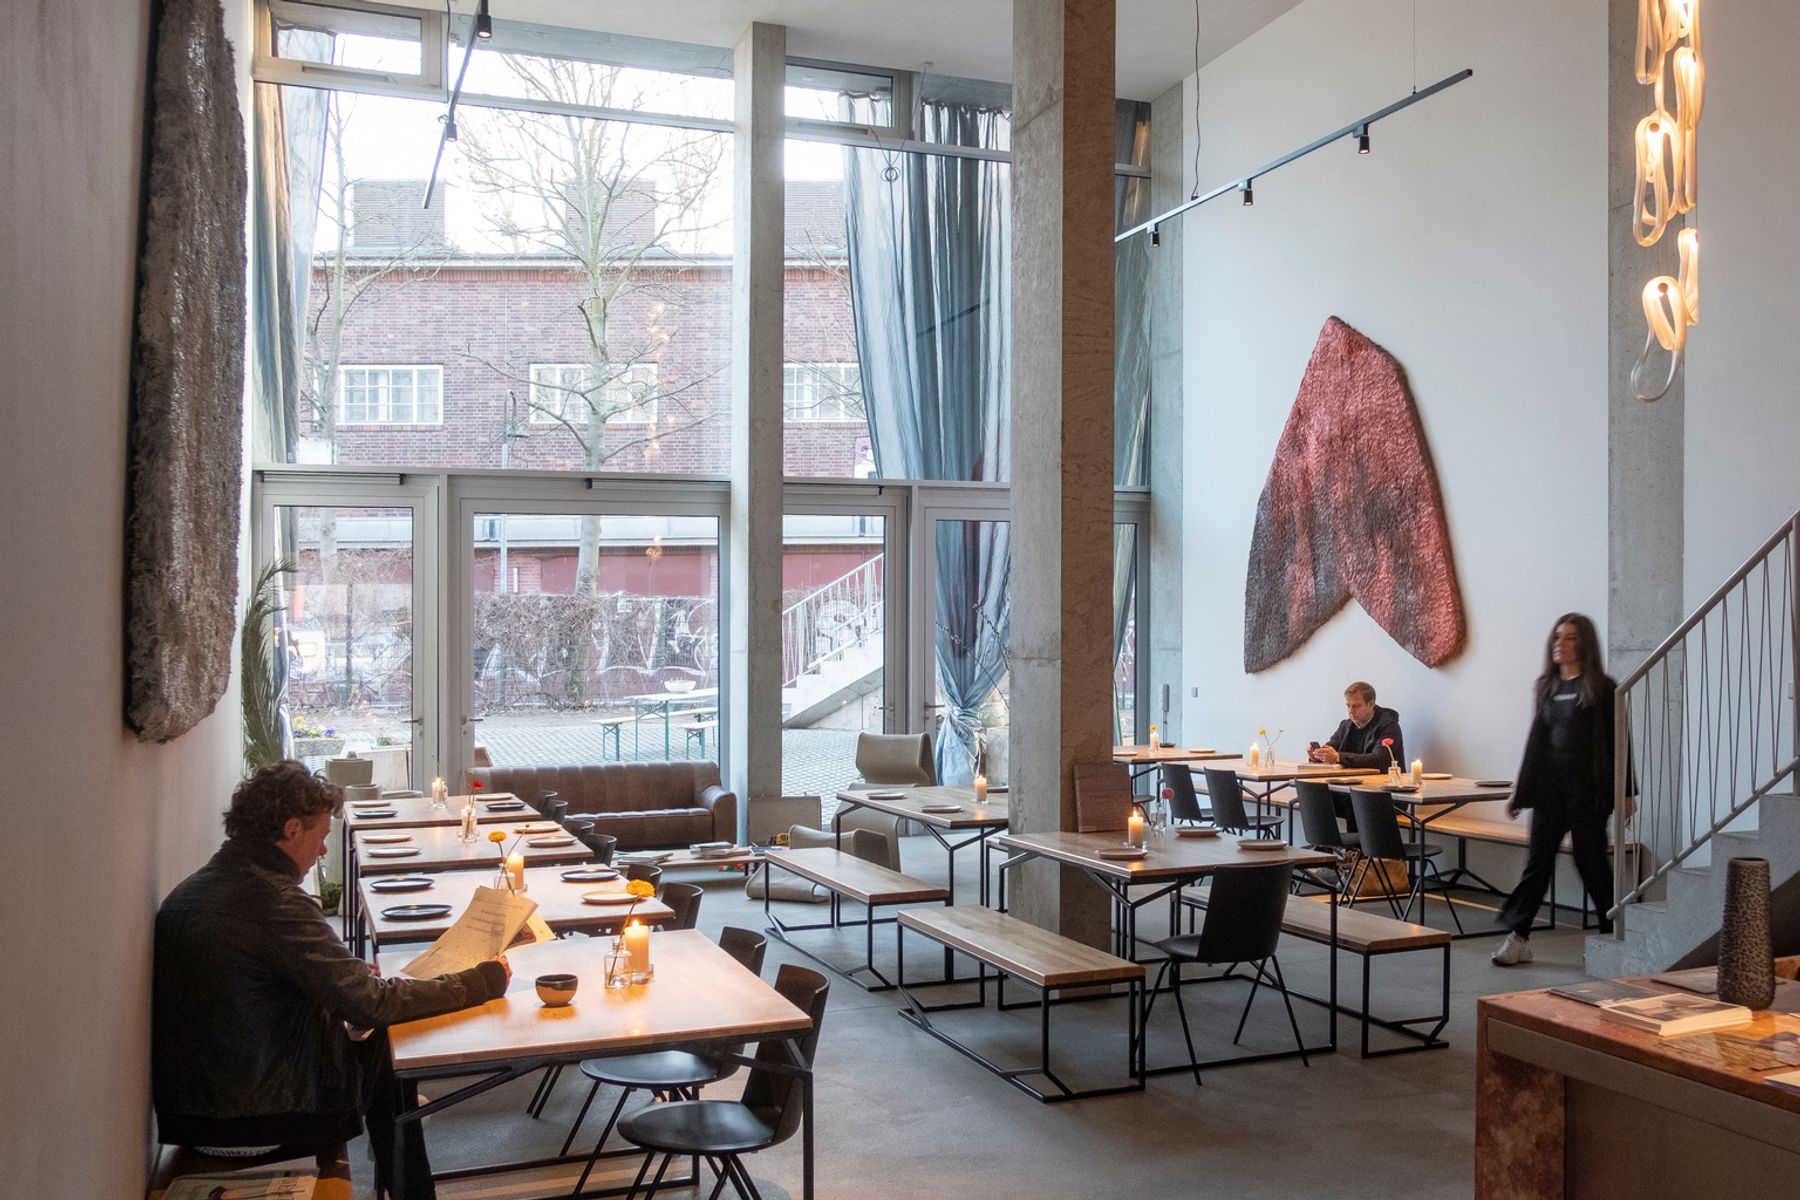 Baldon Cafe & Bar, Berlín. Arquitectura: Brandlhuber, Berlin. Diseño de iluminación: Patrick McCumiskey. Fotografía: Sebastian Mayer, Berlín.